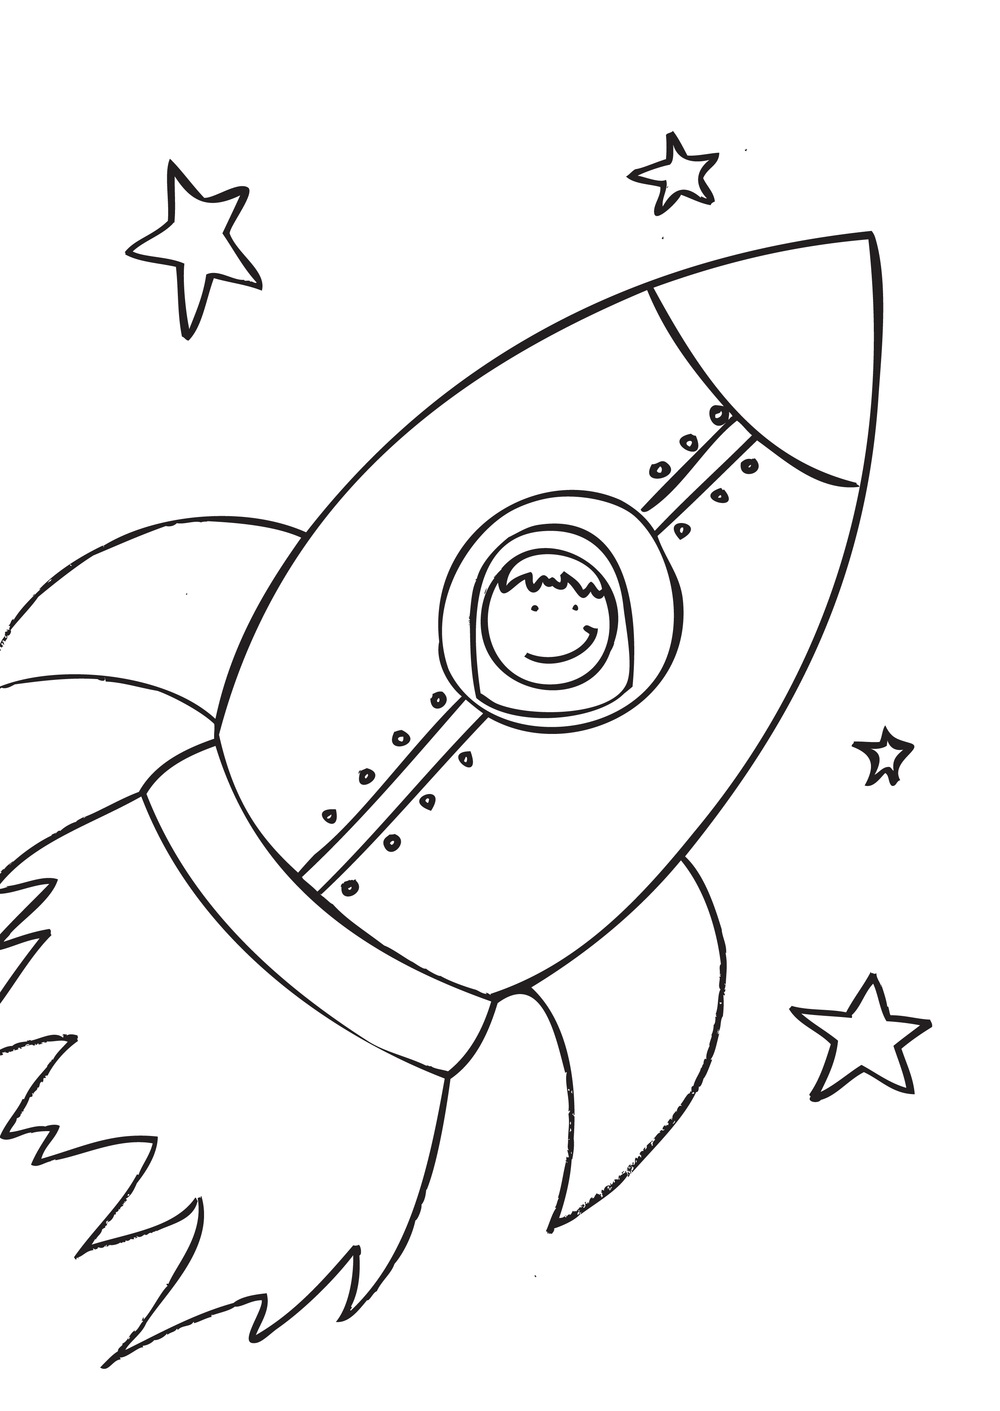 Free Rocket Ship Drawing, Download Free Rocket Ship Drawing png images